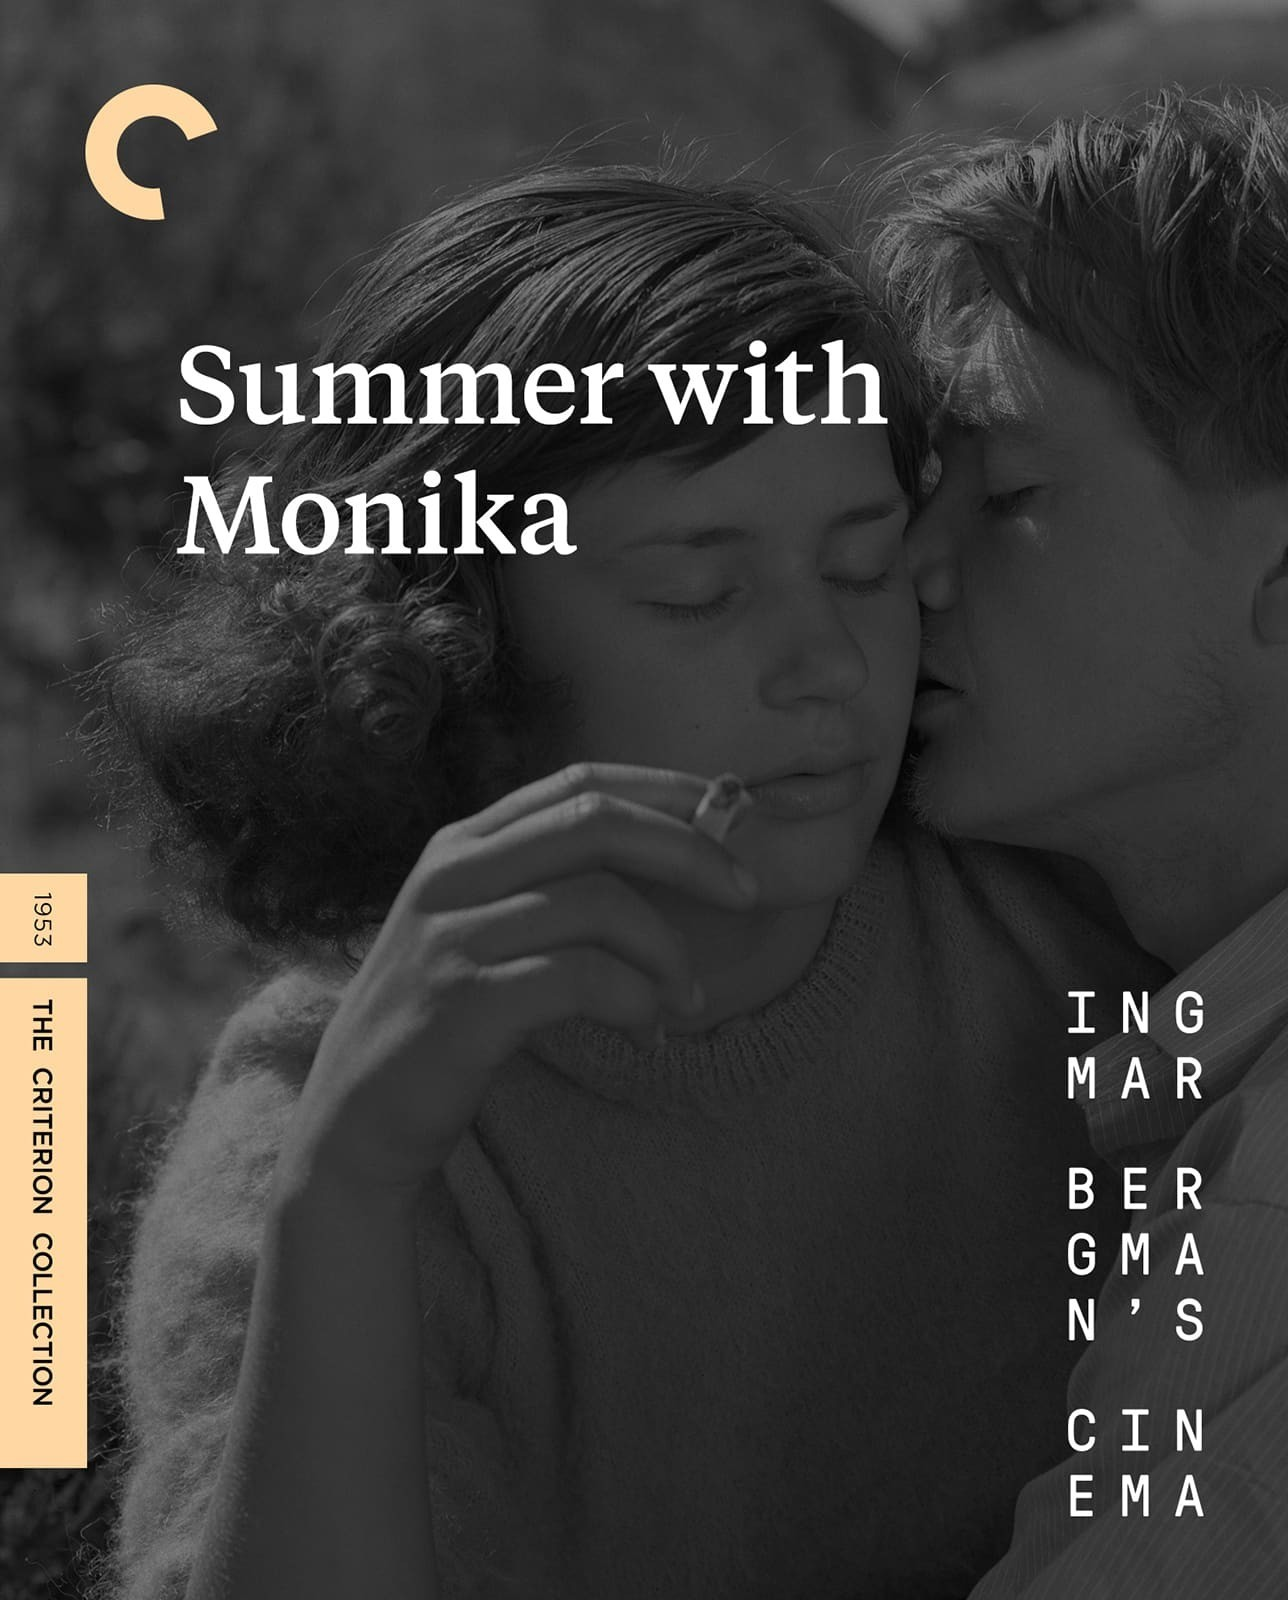 不良少女莫妮卡/莫妮卡(台)DiY官译简繁字幕 英格玛·伯格曼CC百年套装 Summer with Monika 1953 1080p Criterion Collection Blu-ray AVC LPCM1.0-DiY@HDHome[42.11GB]-1.png